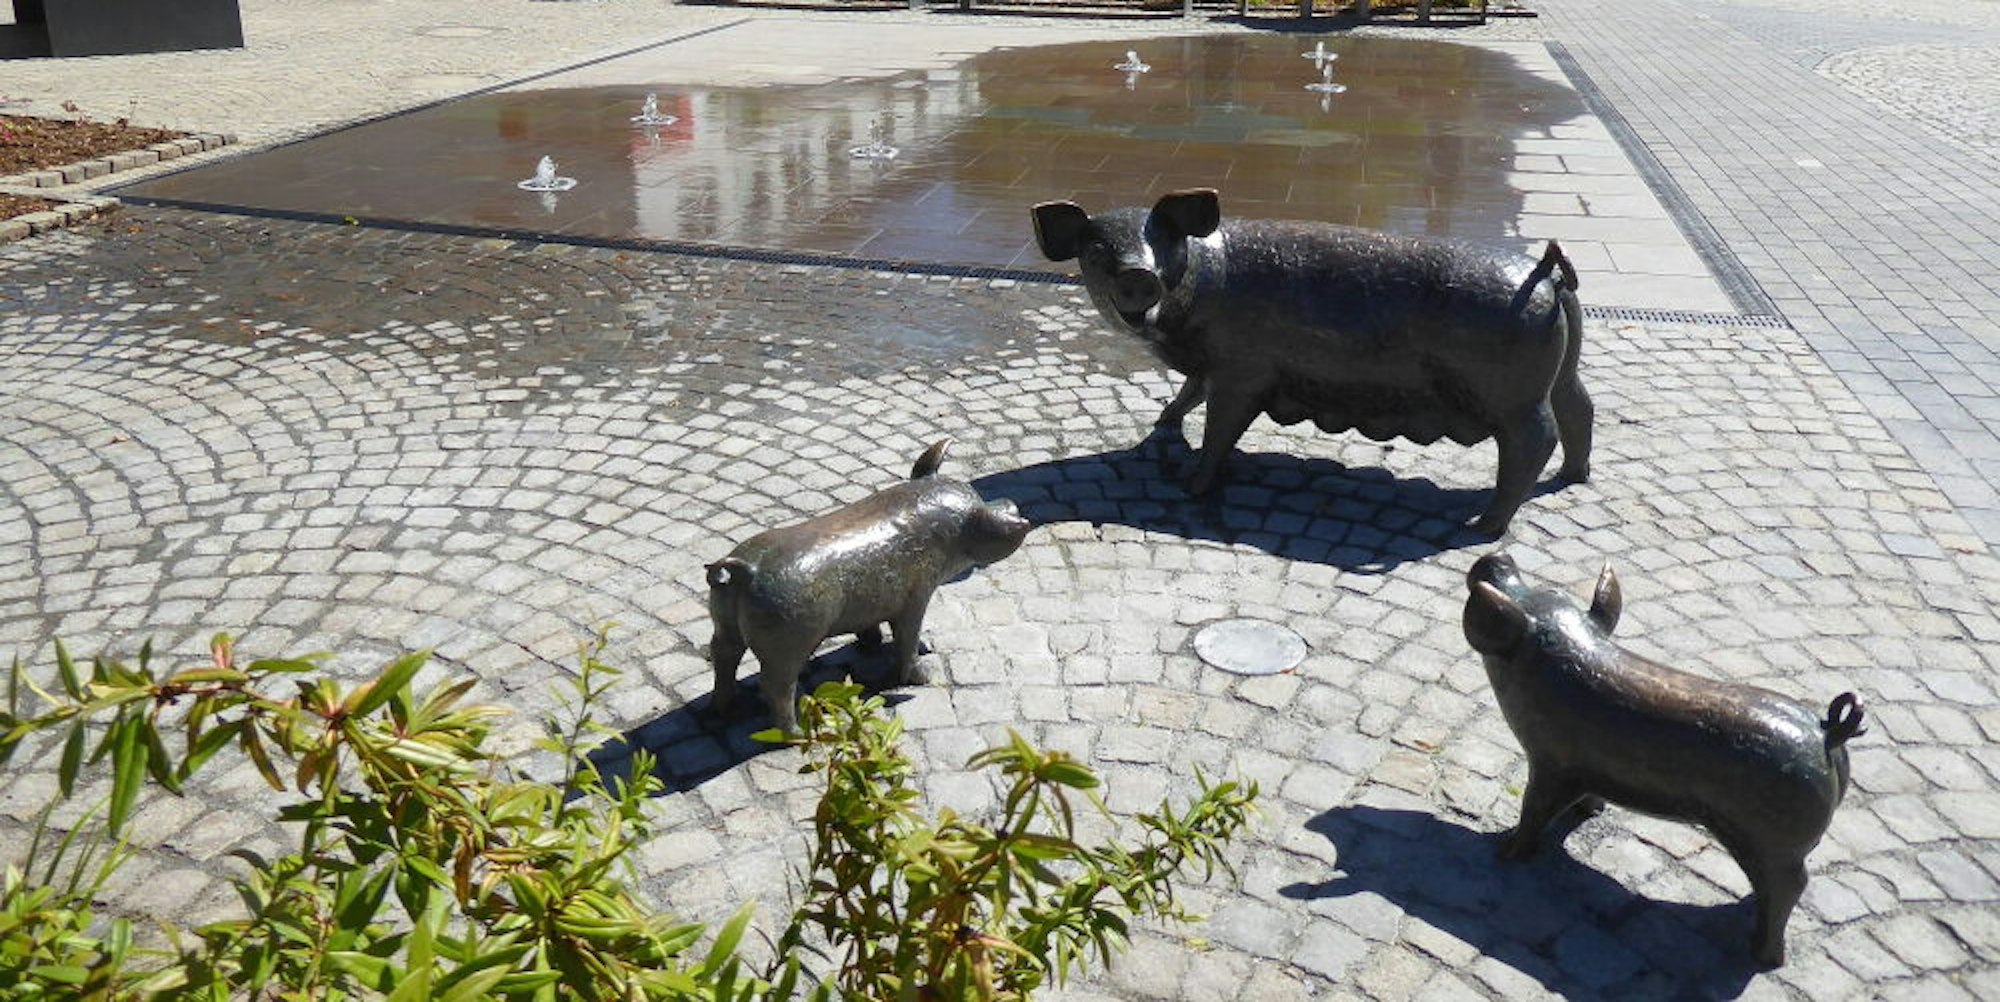 Die Bronzeschweine auf dem Rathausvorplatz erinnern an die Tradition des einstigen Viehmarktes. Pate für die Skulpturen standen die Schweine, die Ende der 1920er vor dem ehemaligen Hotel Brück auf der Waage standen.